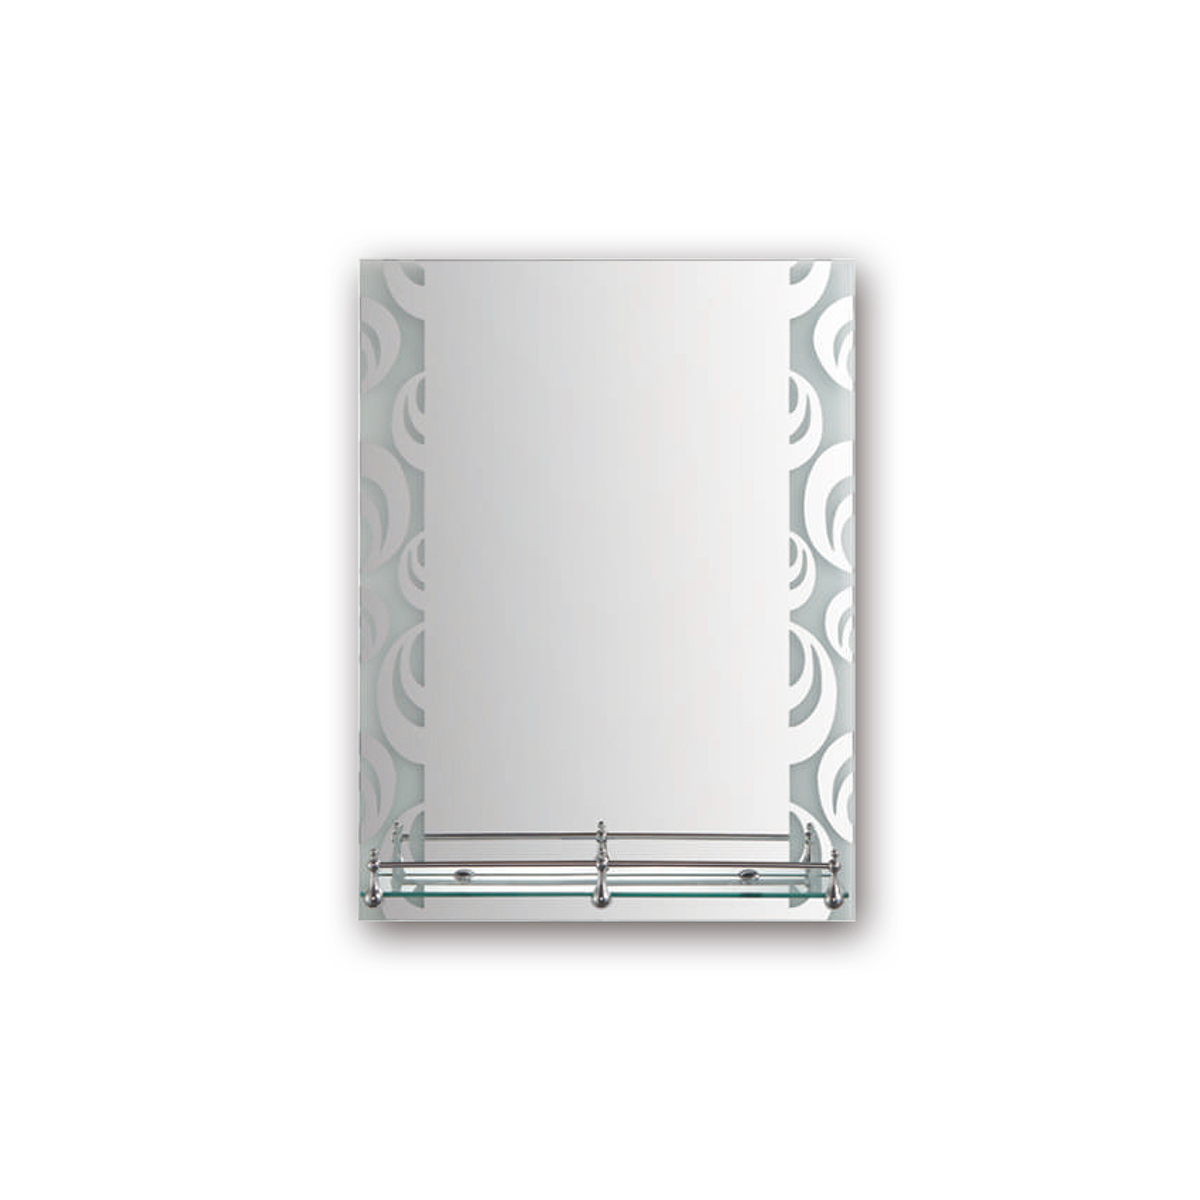 Зеркало прямоугольное Frap F695, с полкой, 60 x 45 см зеркало прямоугольное frap f693 60 x 45 см